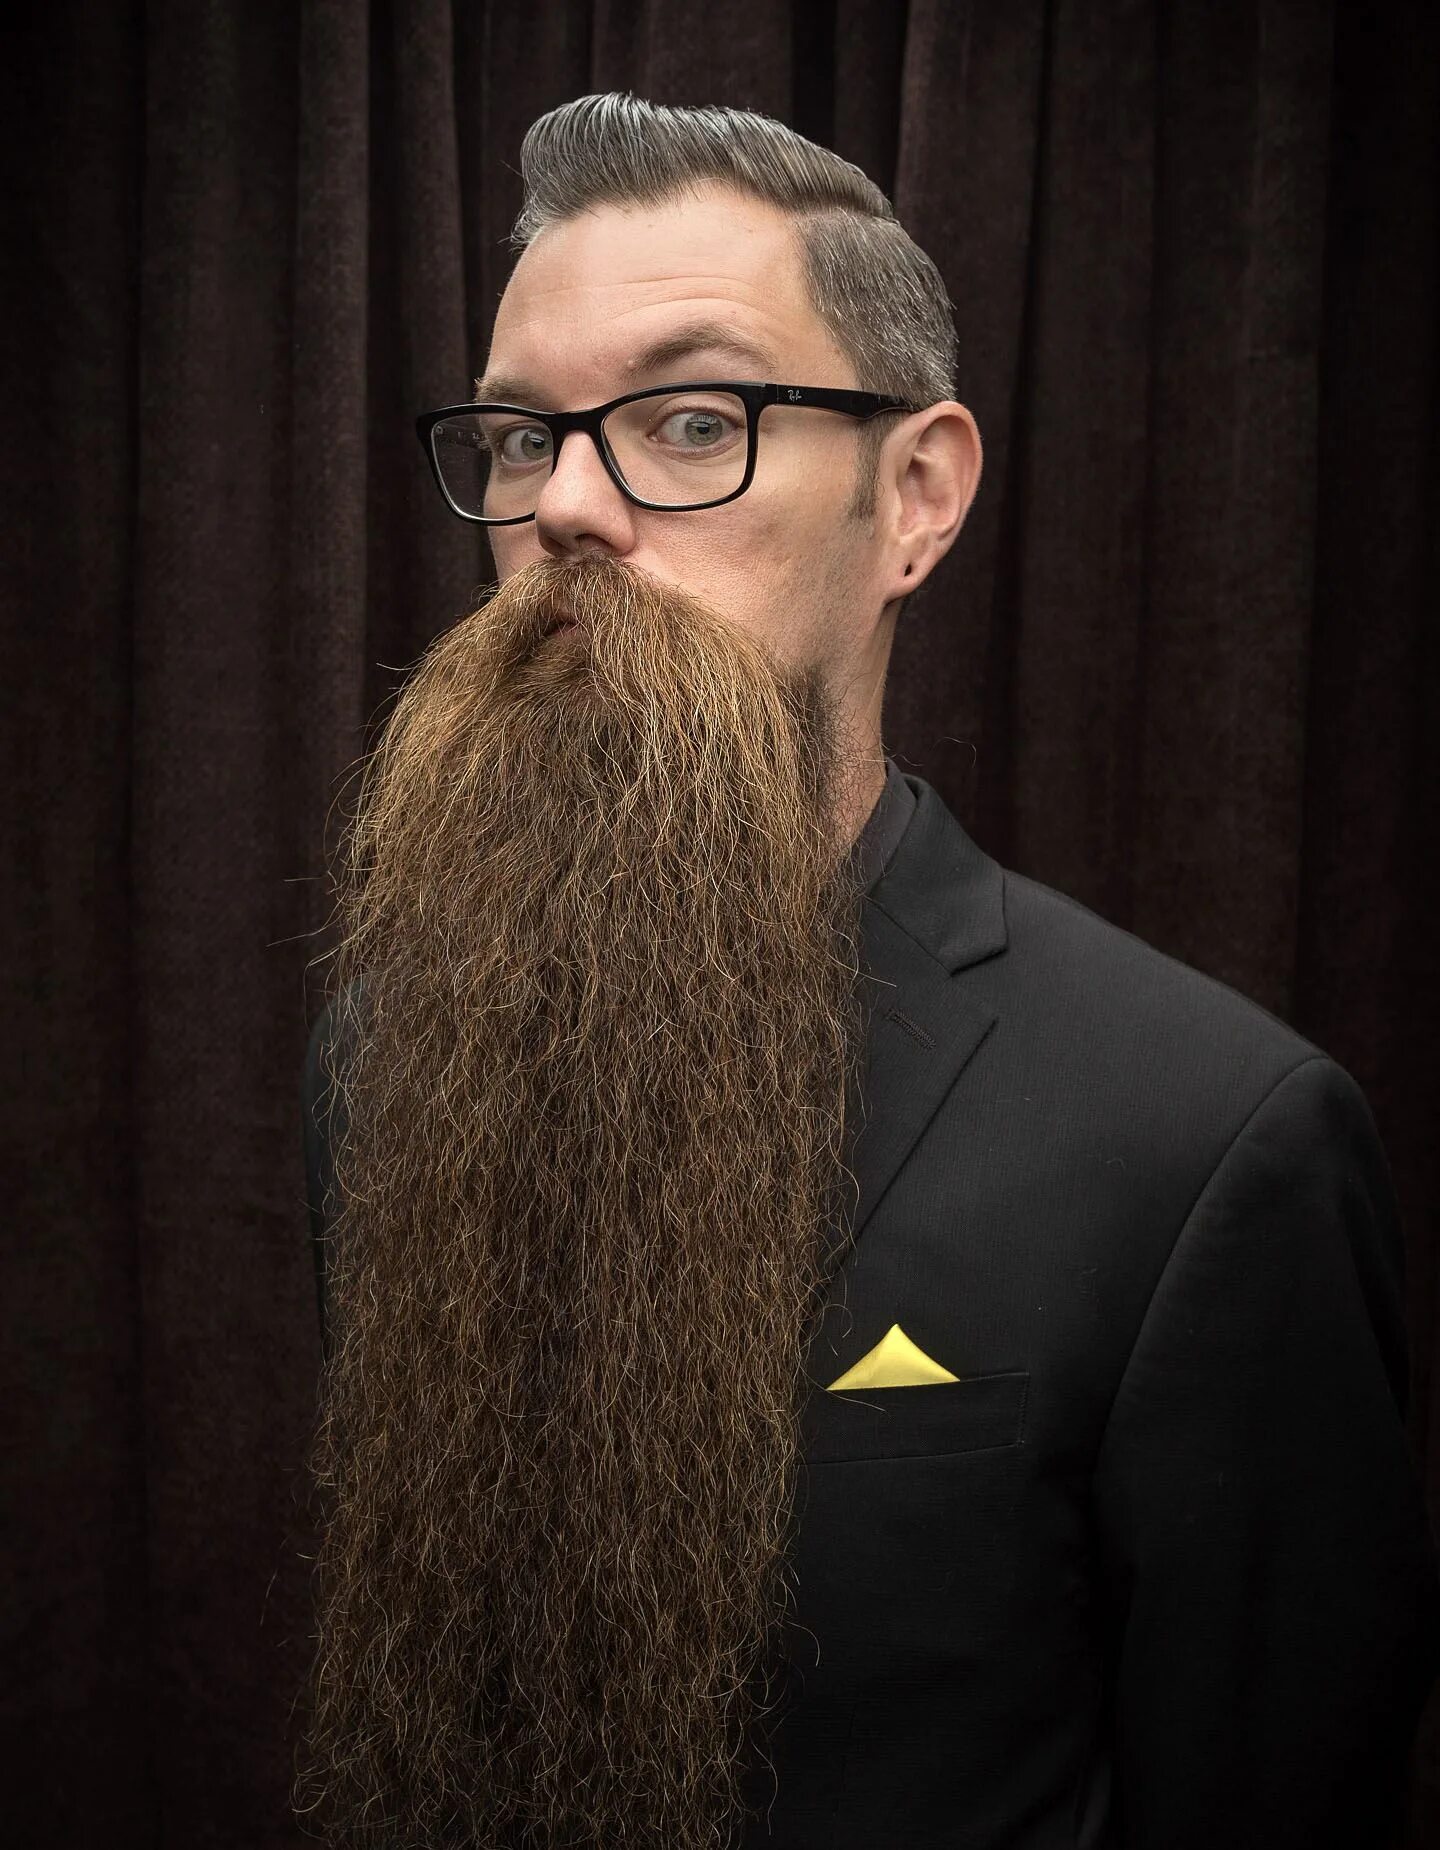 Козья борода. Козлиная (goatee). Борода козлиная бородка. Full goatee борода. Борода эспаньолка длинная.